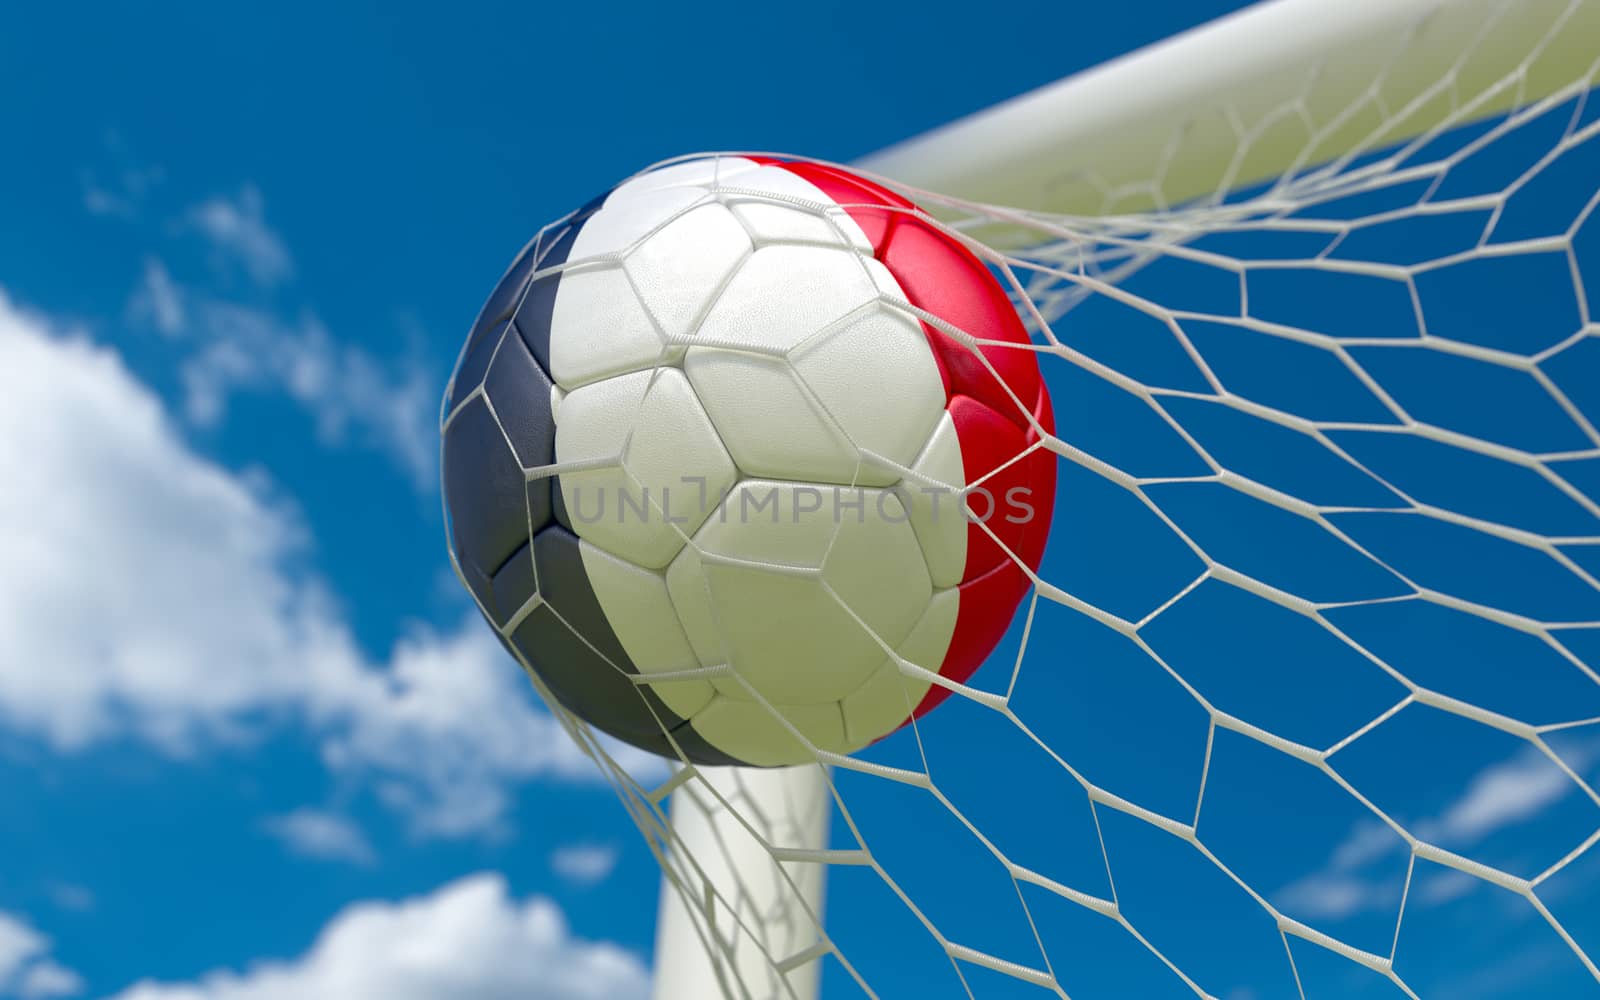 France flag and soccer ball in goal net by Barbraford